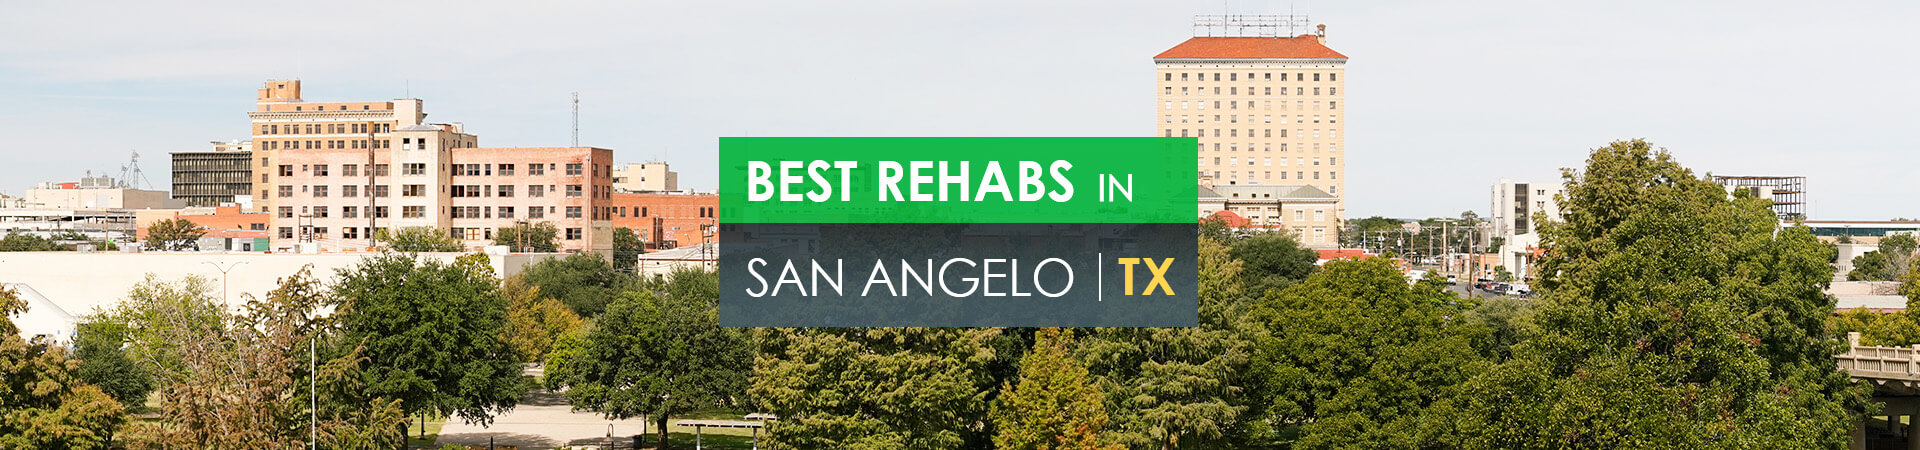 Best rehabs in San Angelo, TX